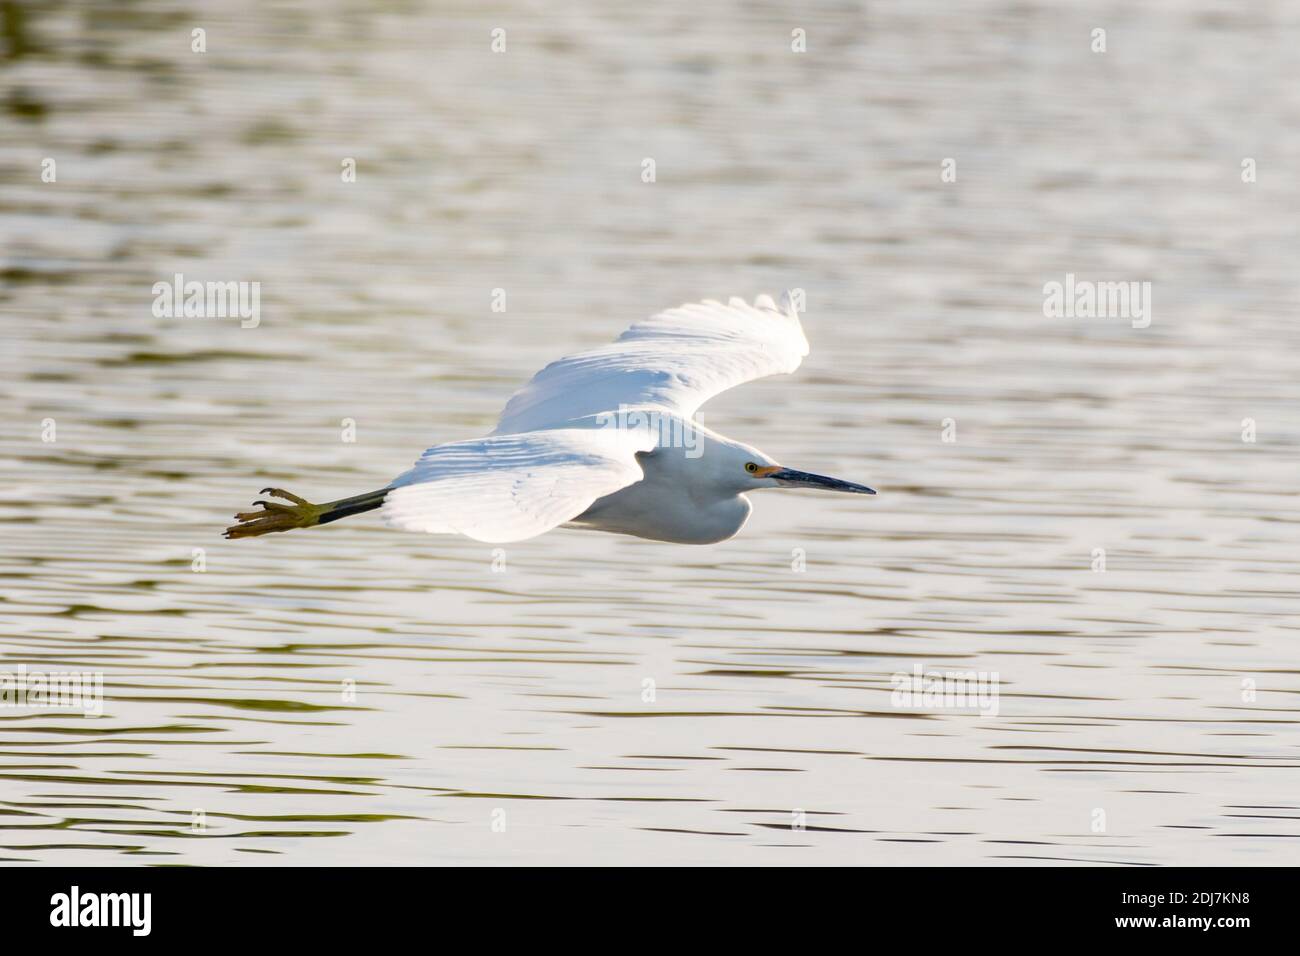 Weißreiher-Vogel breitet Flügel breit aus, um über die Wasseroberfläche des Teiches zum gegenüberliegenden Ufer zu gleiten. Stockfoto